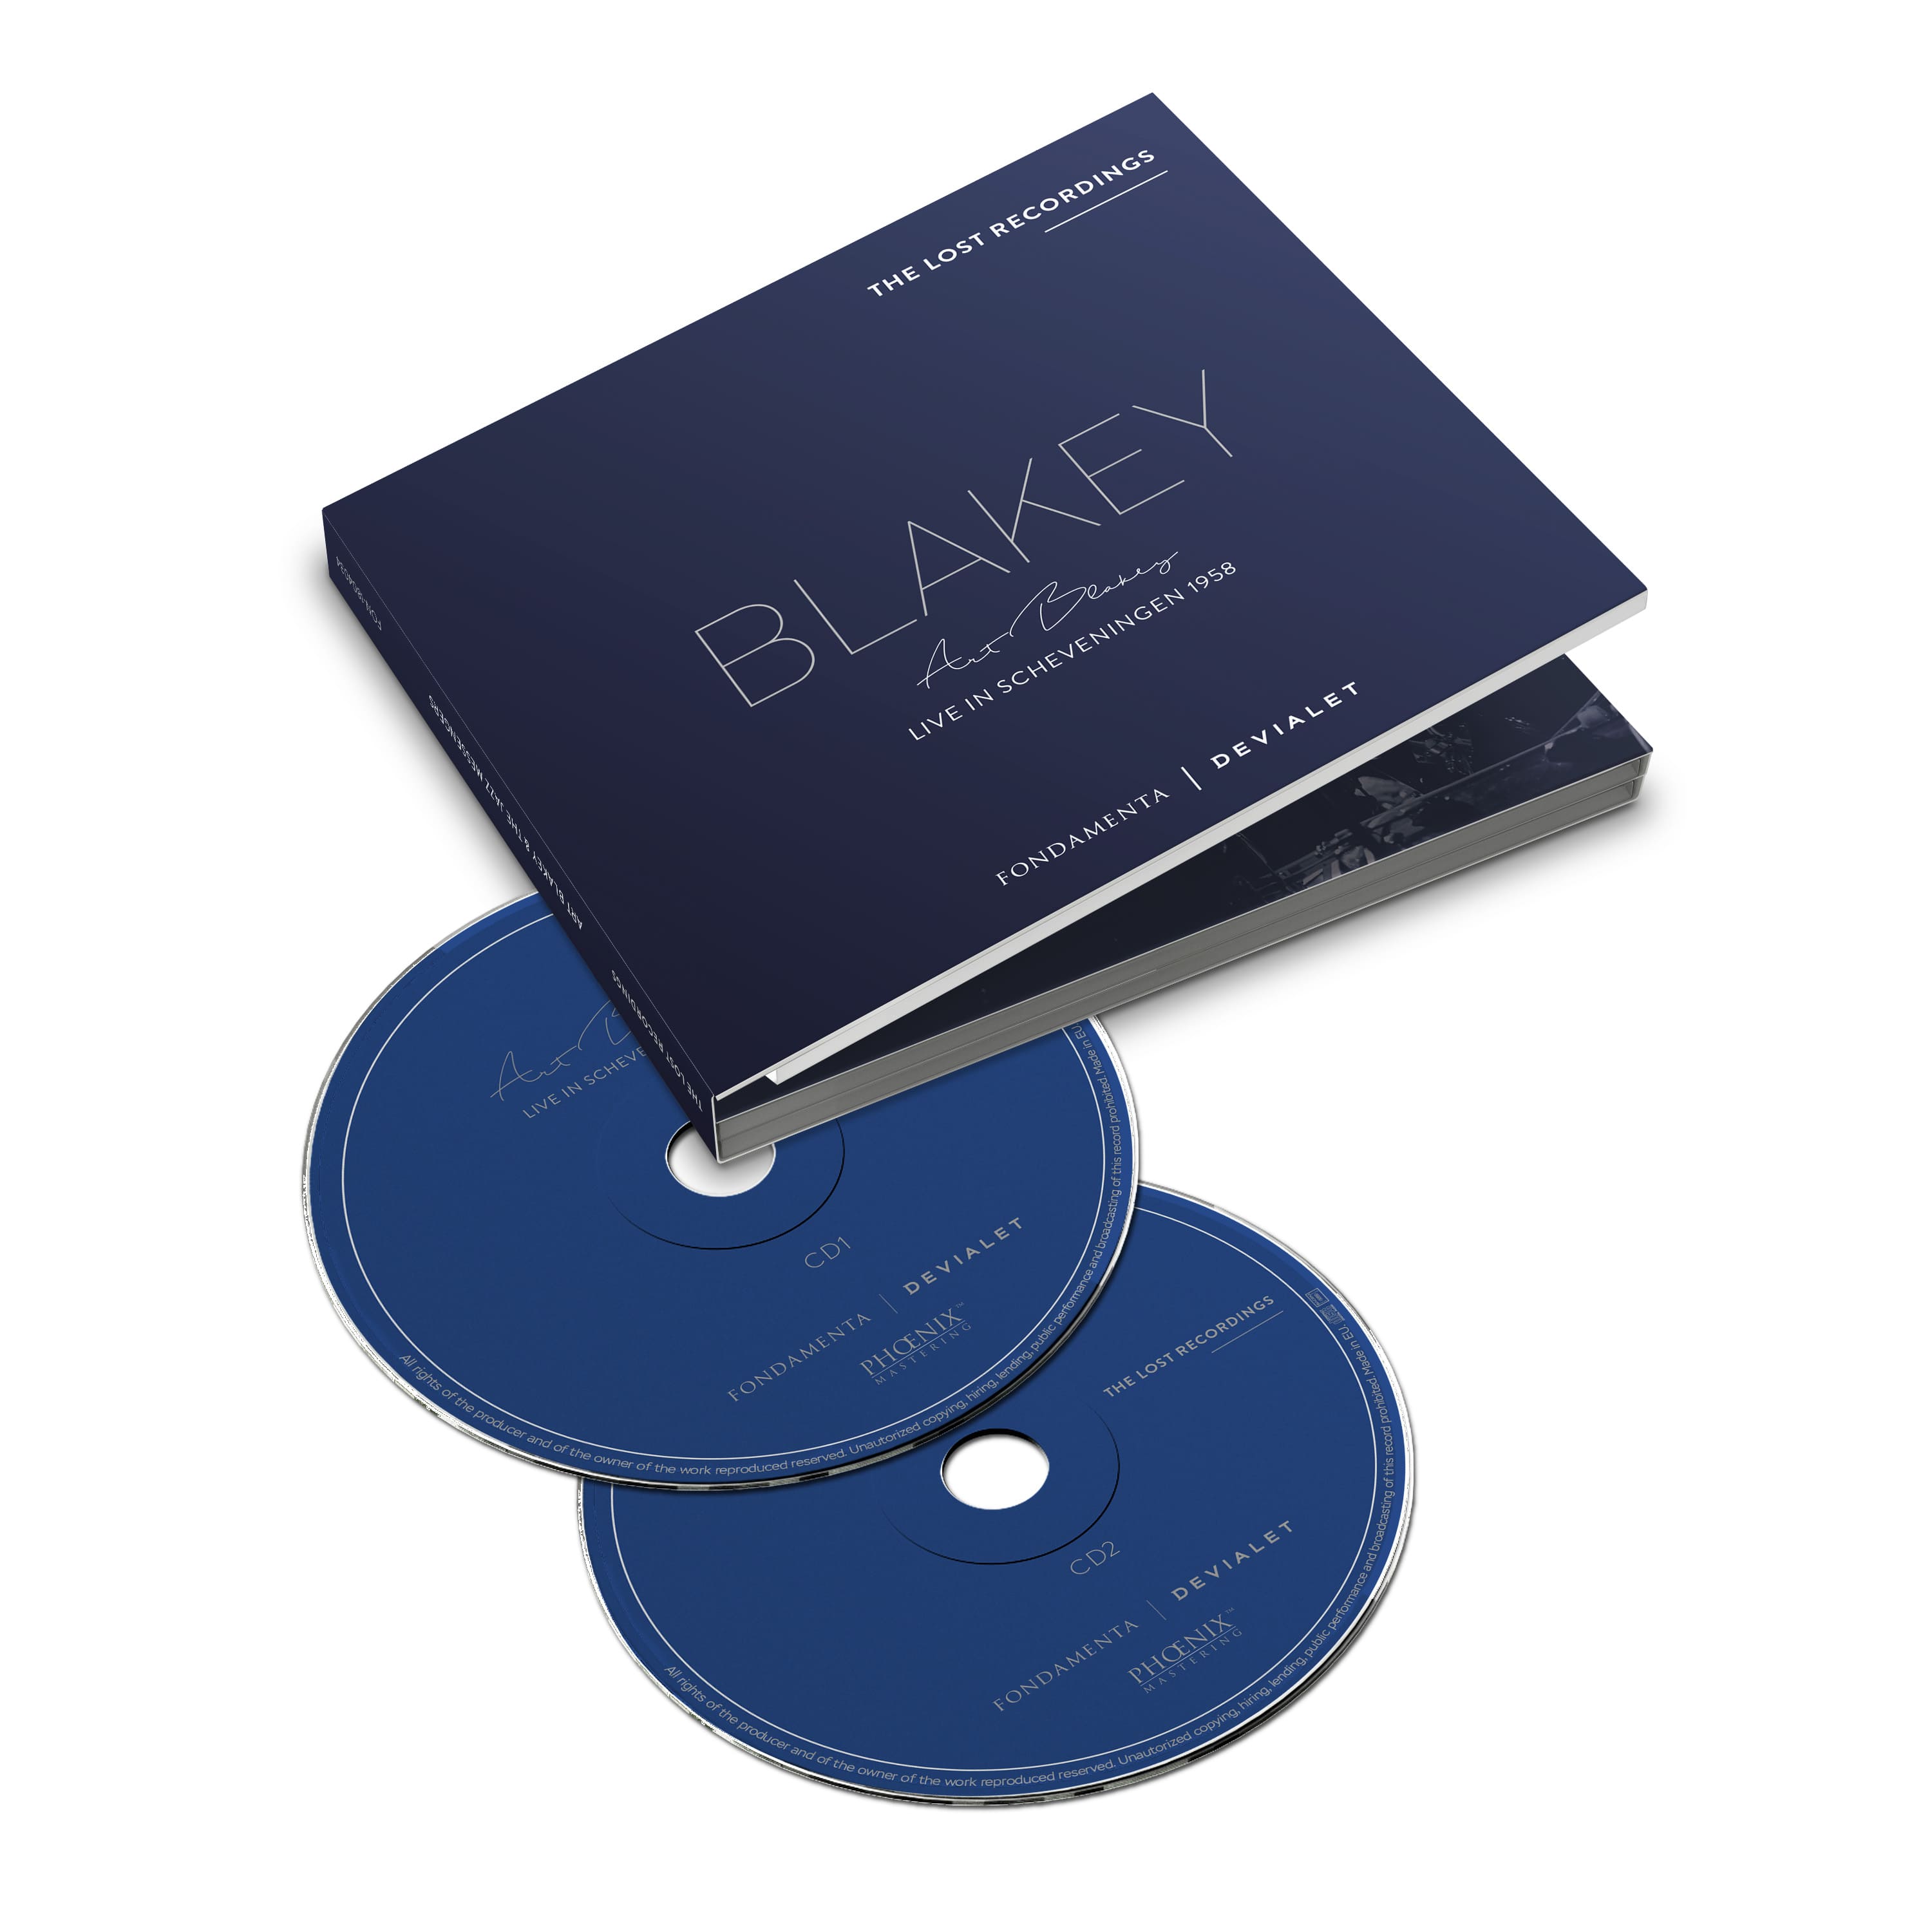 Art Blakey - Live in Scheveningen - 1958 - Double CD